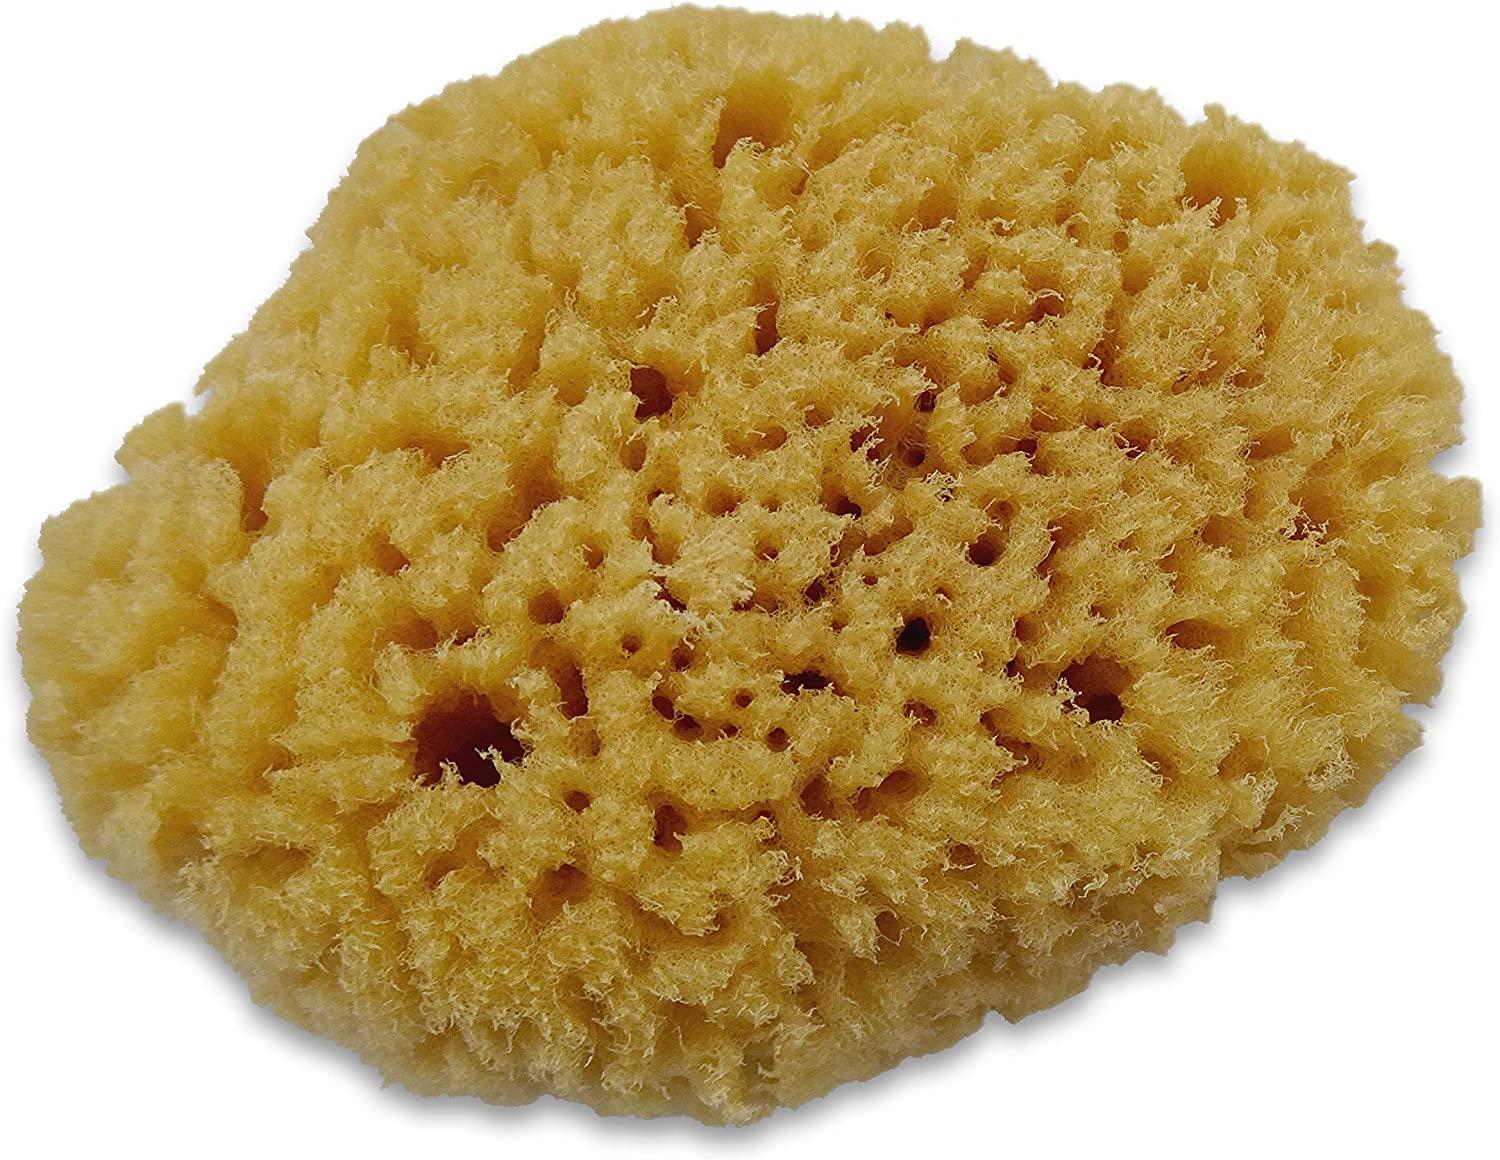 Unbleached Natural Sea Sponge